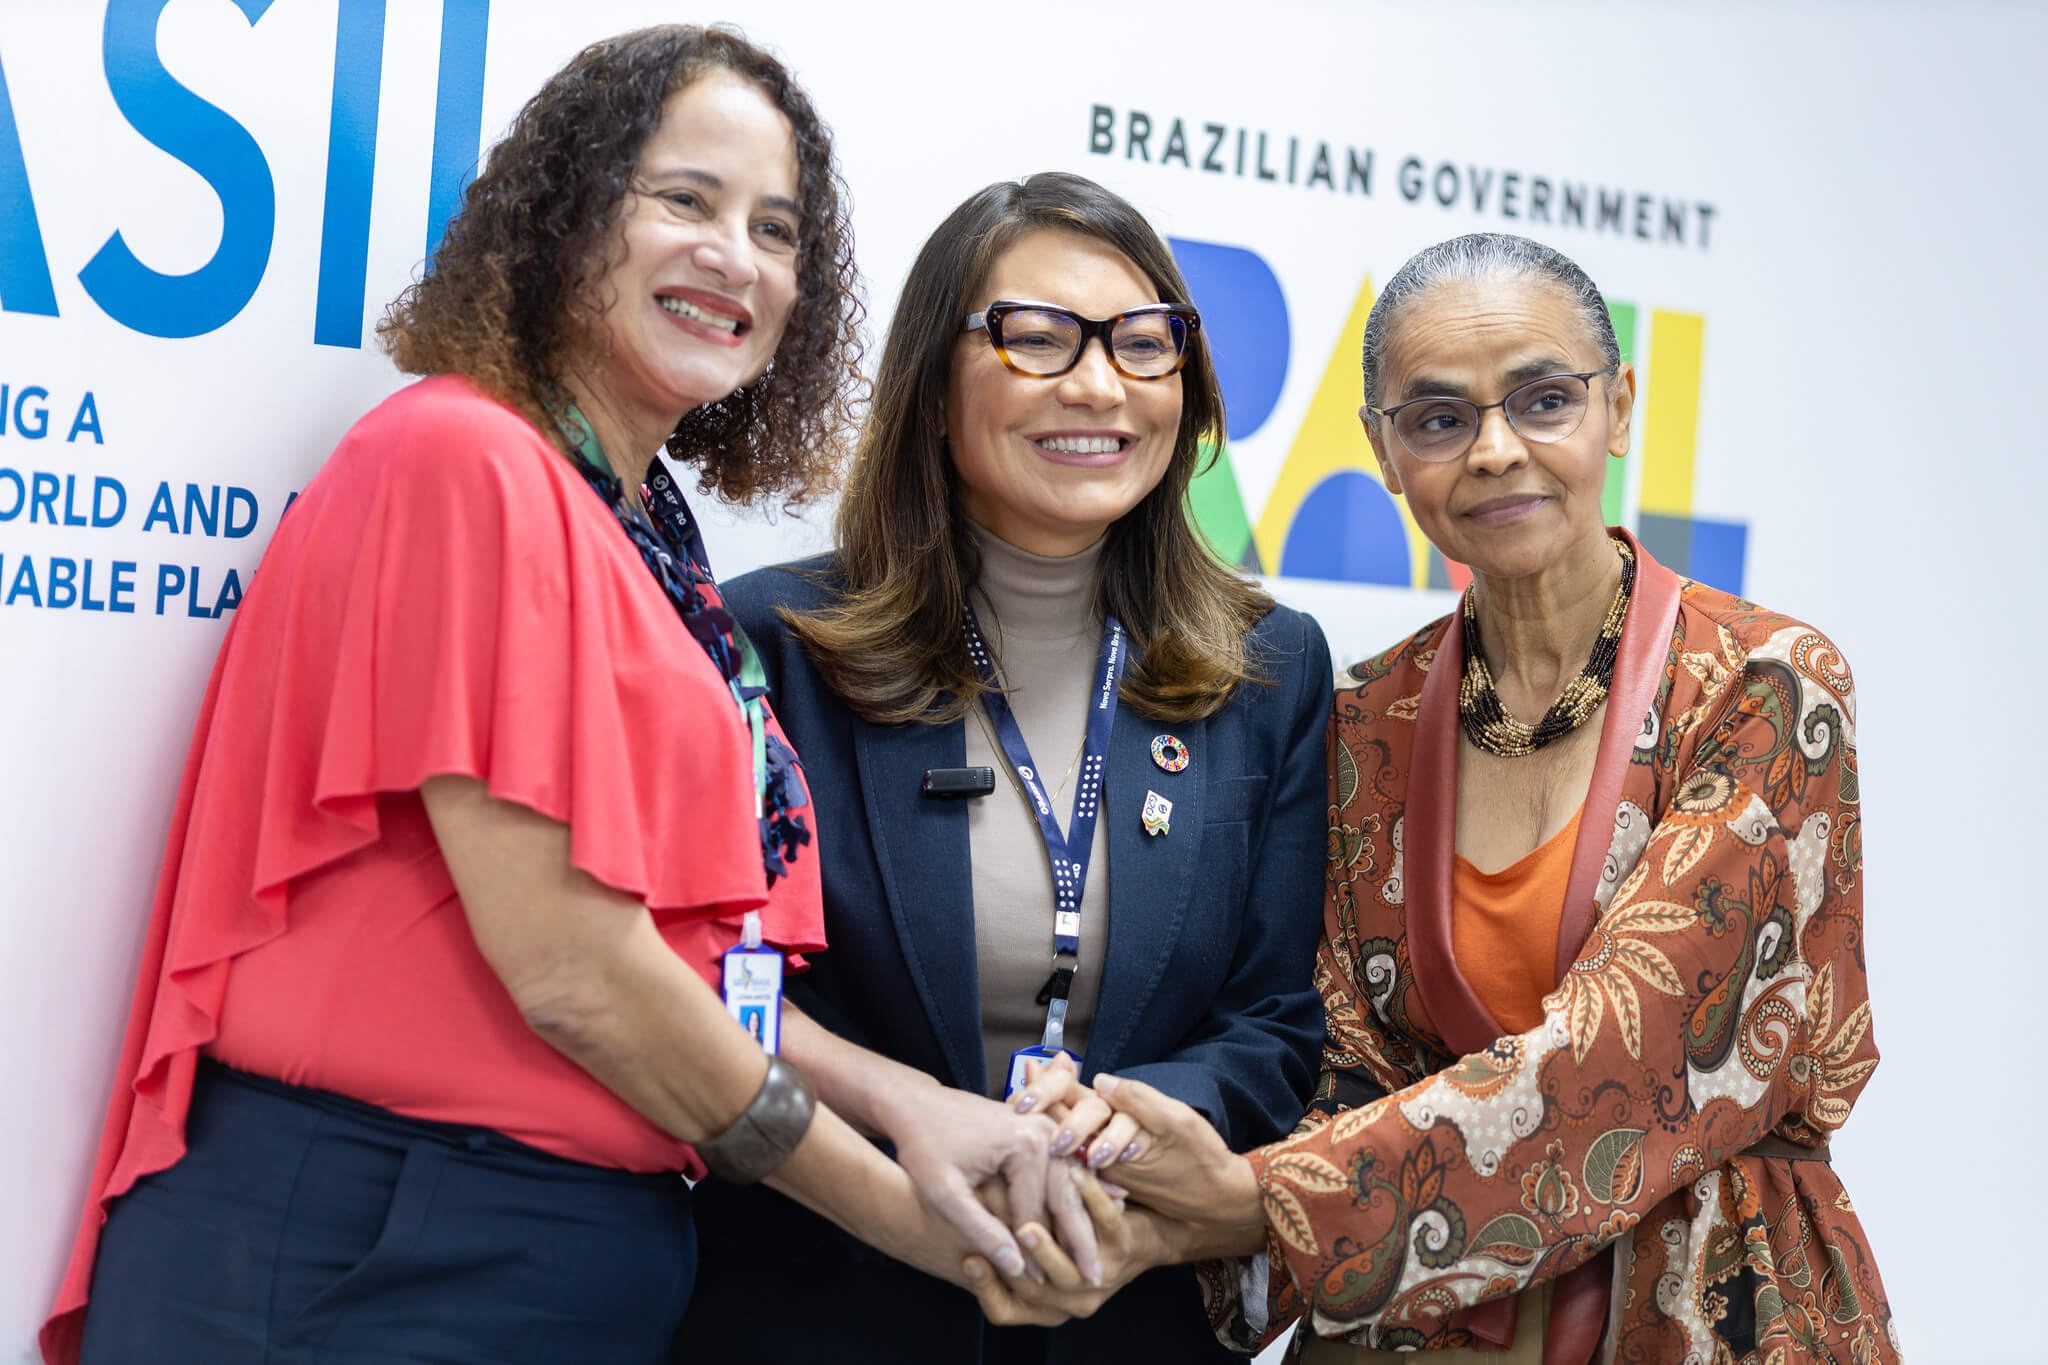 Ministras brasileiras Marina Silva, Luciana Santos e a socióloga Janja Lula defendem a bioeconomia para o crescimento econômico sustentável e justo | Foto: Audiovisual do G20 Brasil